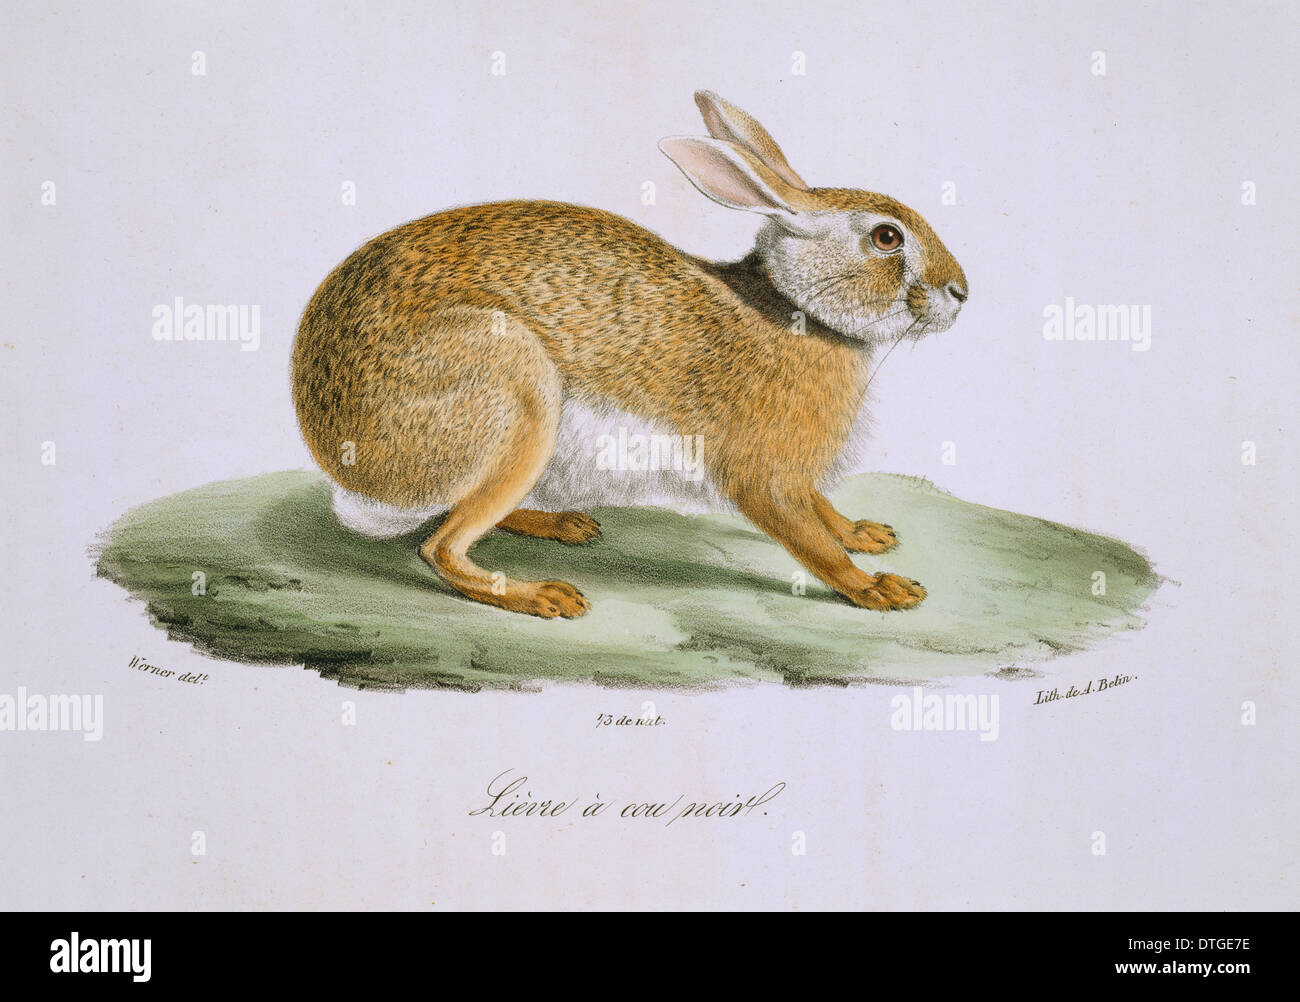 Lepus europaeus, European brown hare Banque D'Images